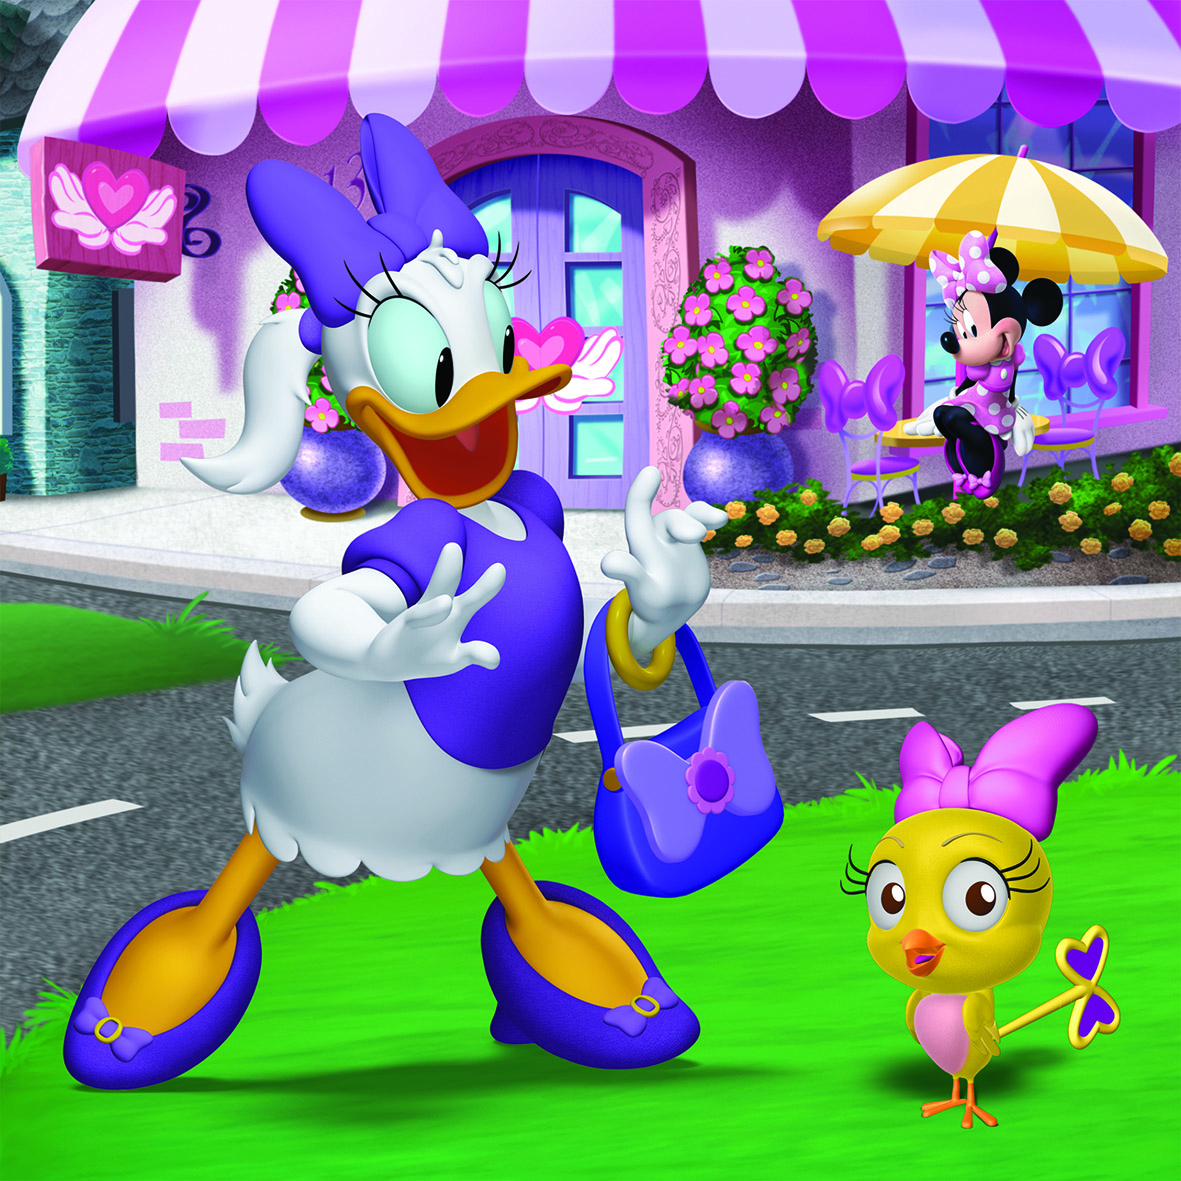 Puzzle - Daisy et Minnie - Disney - 4 puzzles - Dès 3 ans - Educa -  Profitez-en